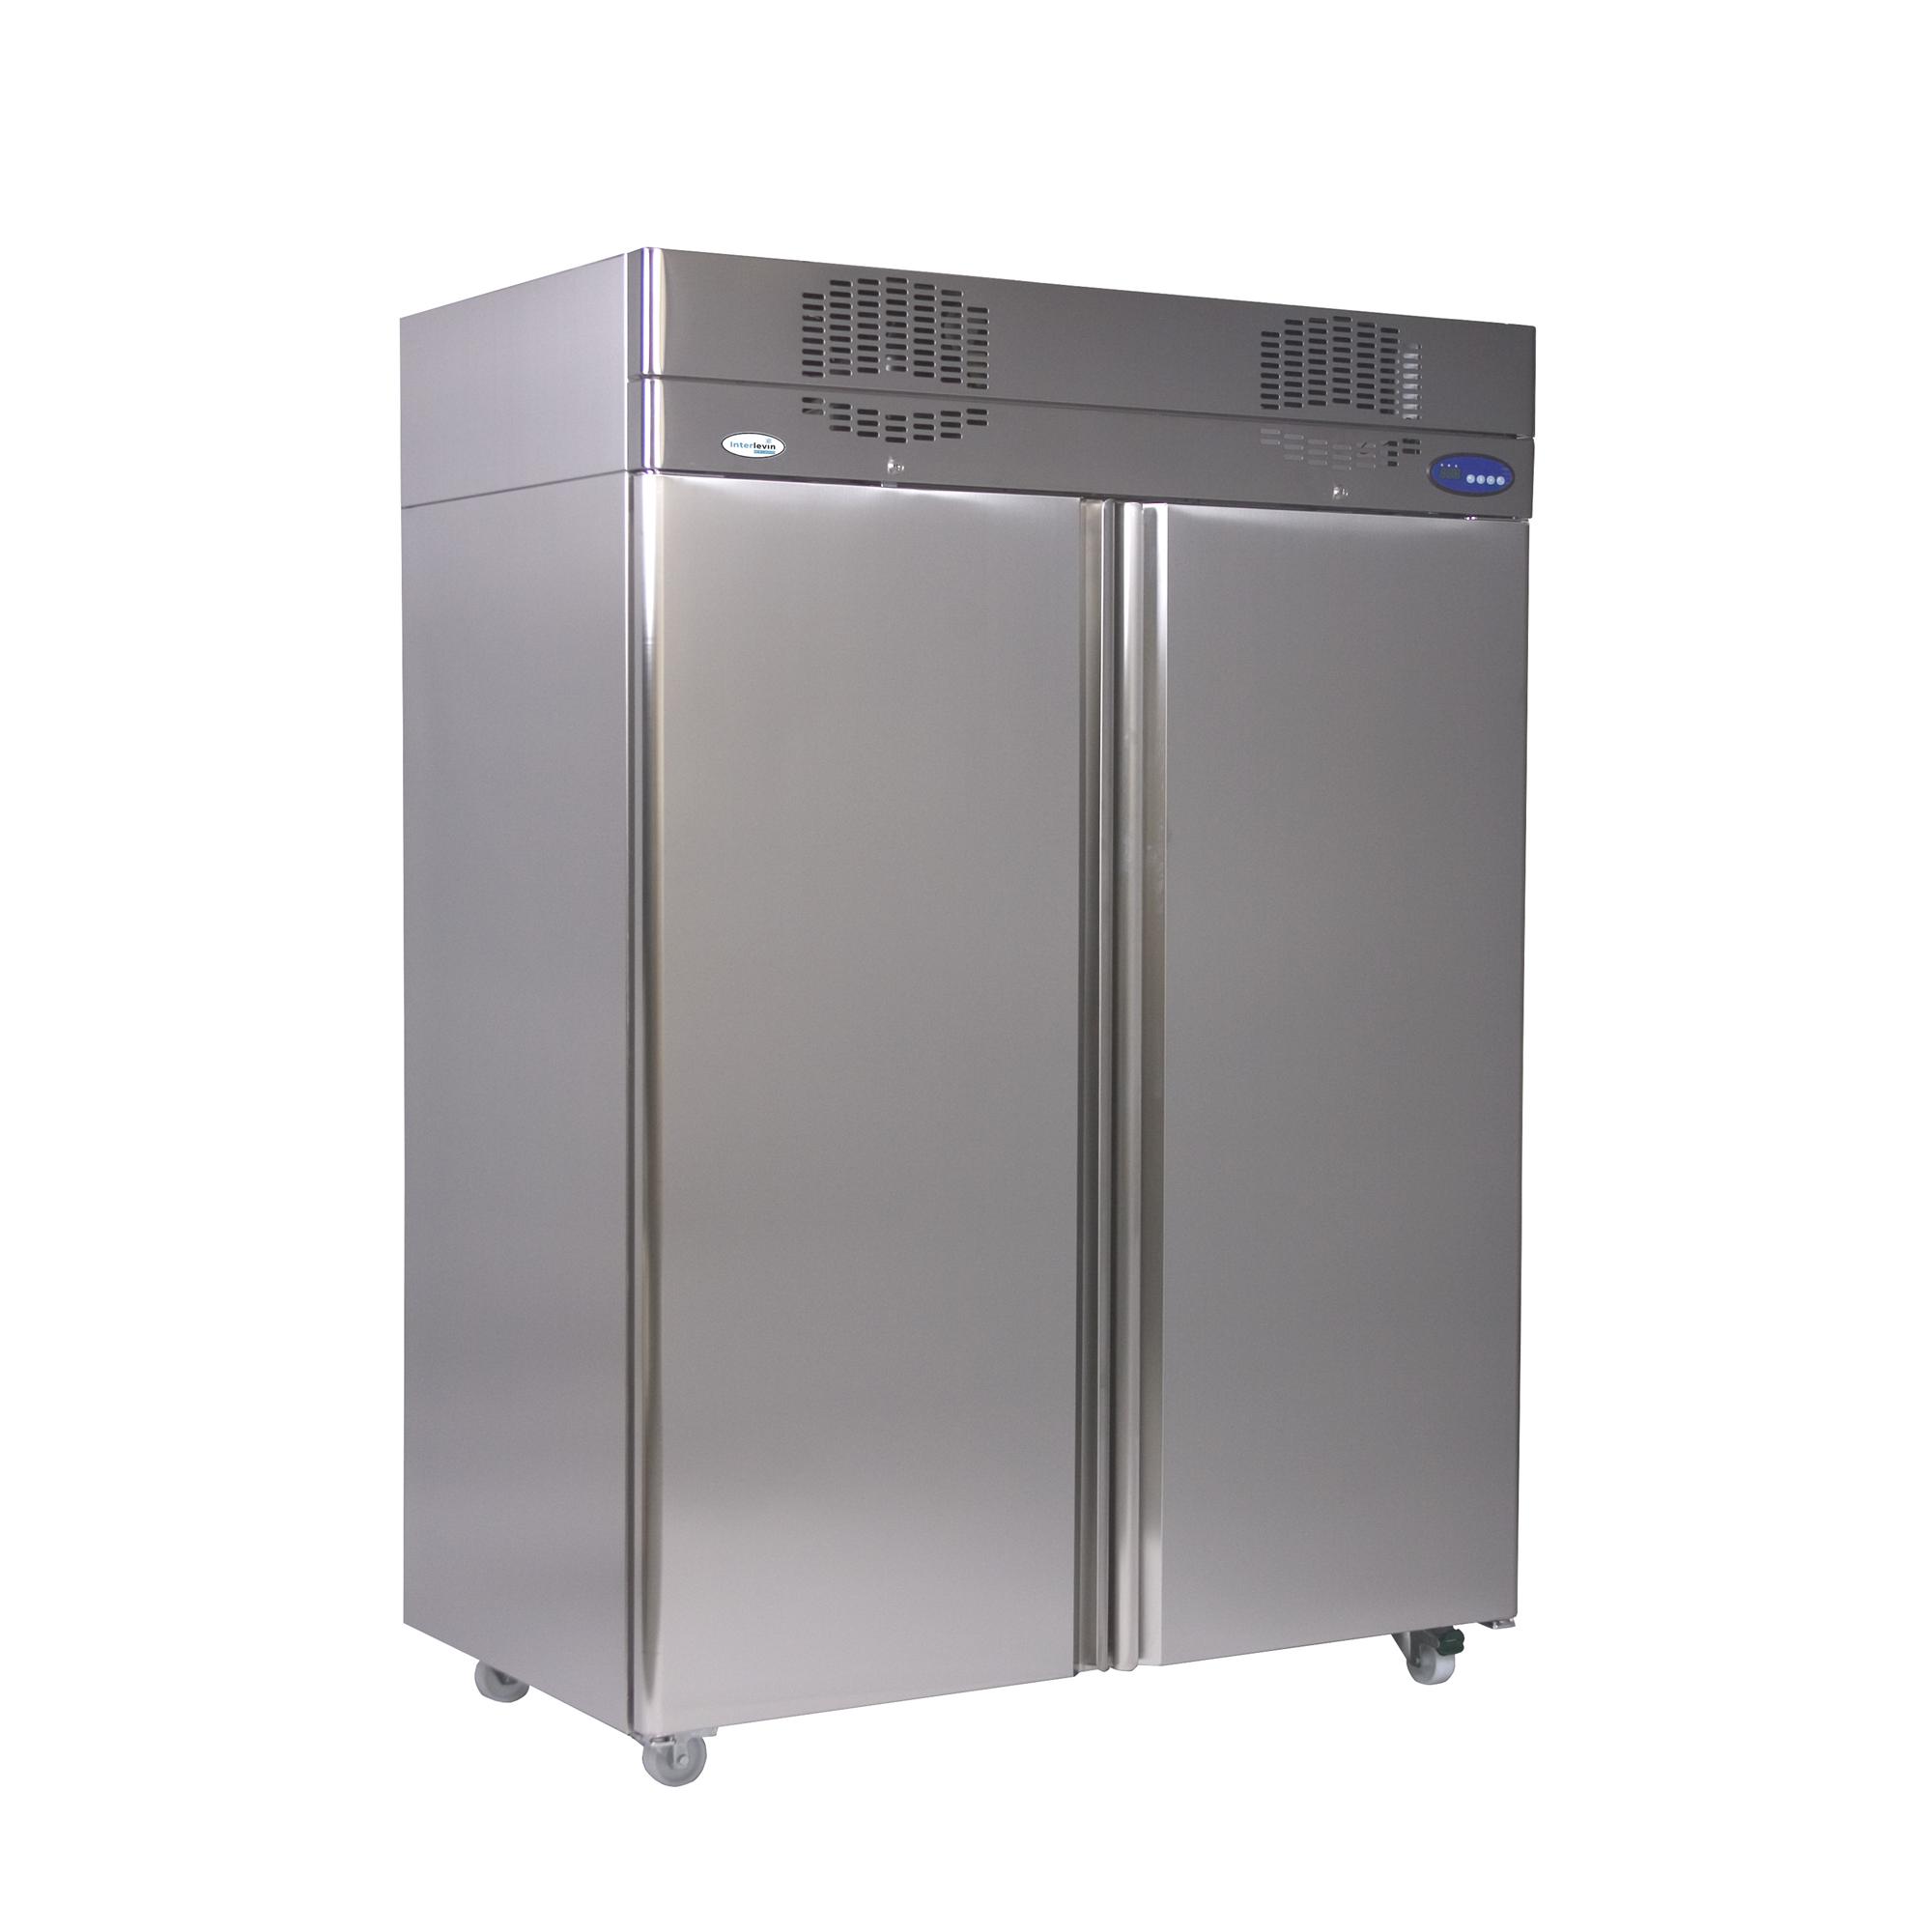 Gastronorm Solid Door Refrigerator